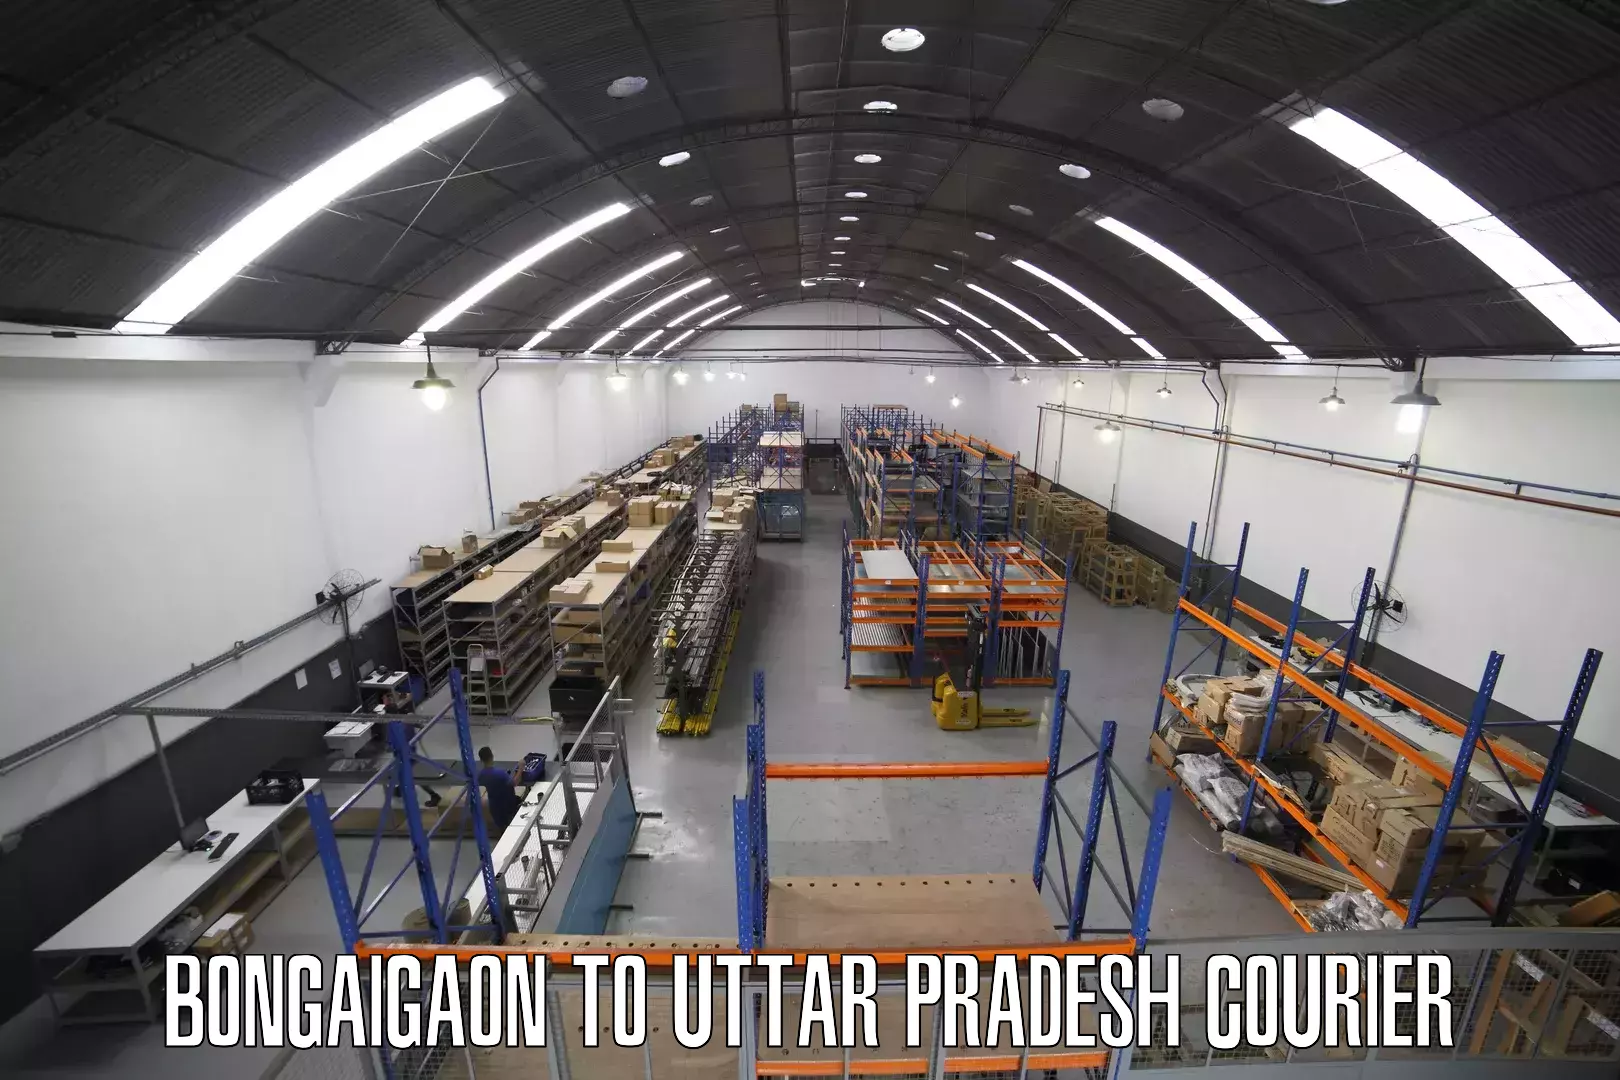 Courier service partnerships Bongaigaon to Lal Gopalganj